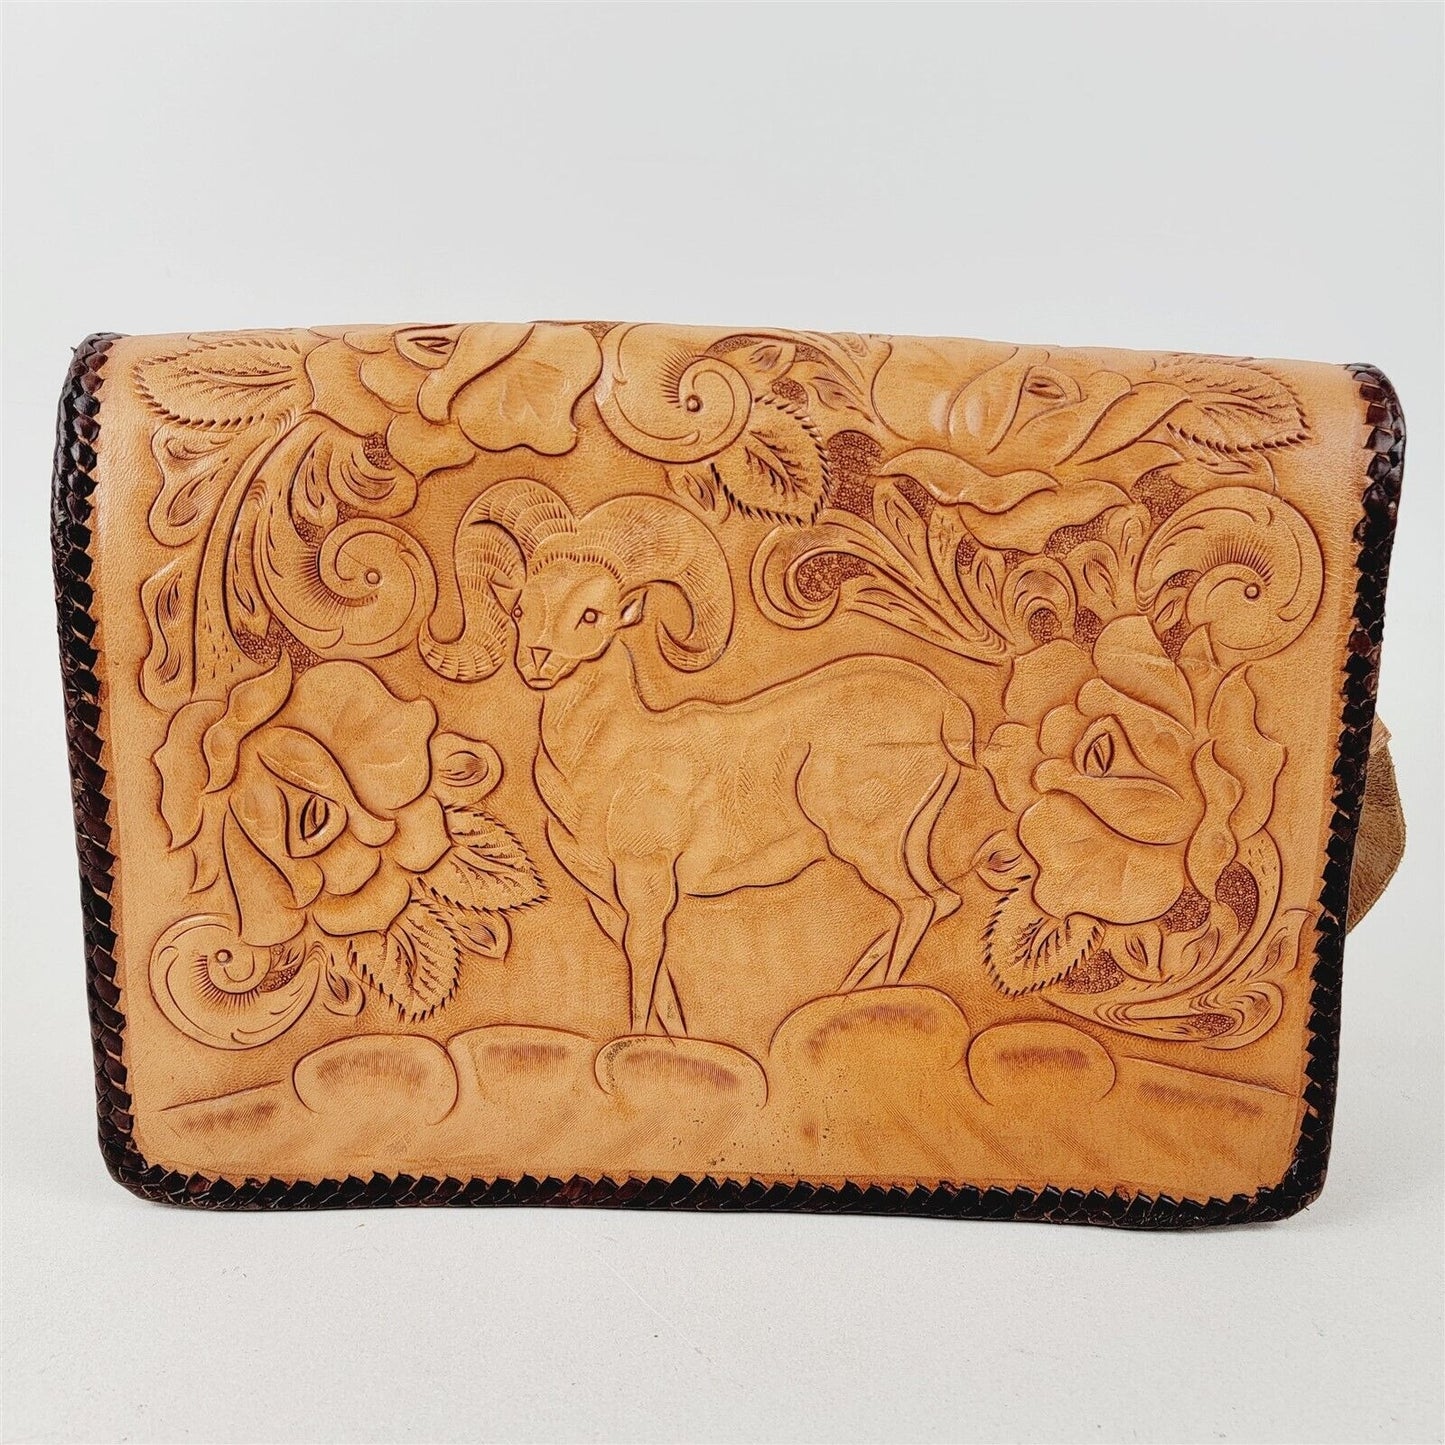 Vintage Hand Tooled Floral Leather Handbag Shoulder Bag Alaska Bighorn Sheep